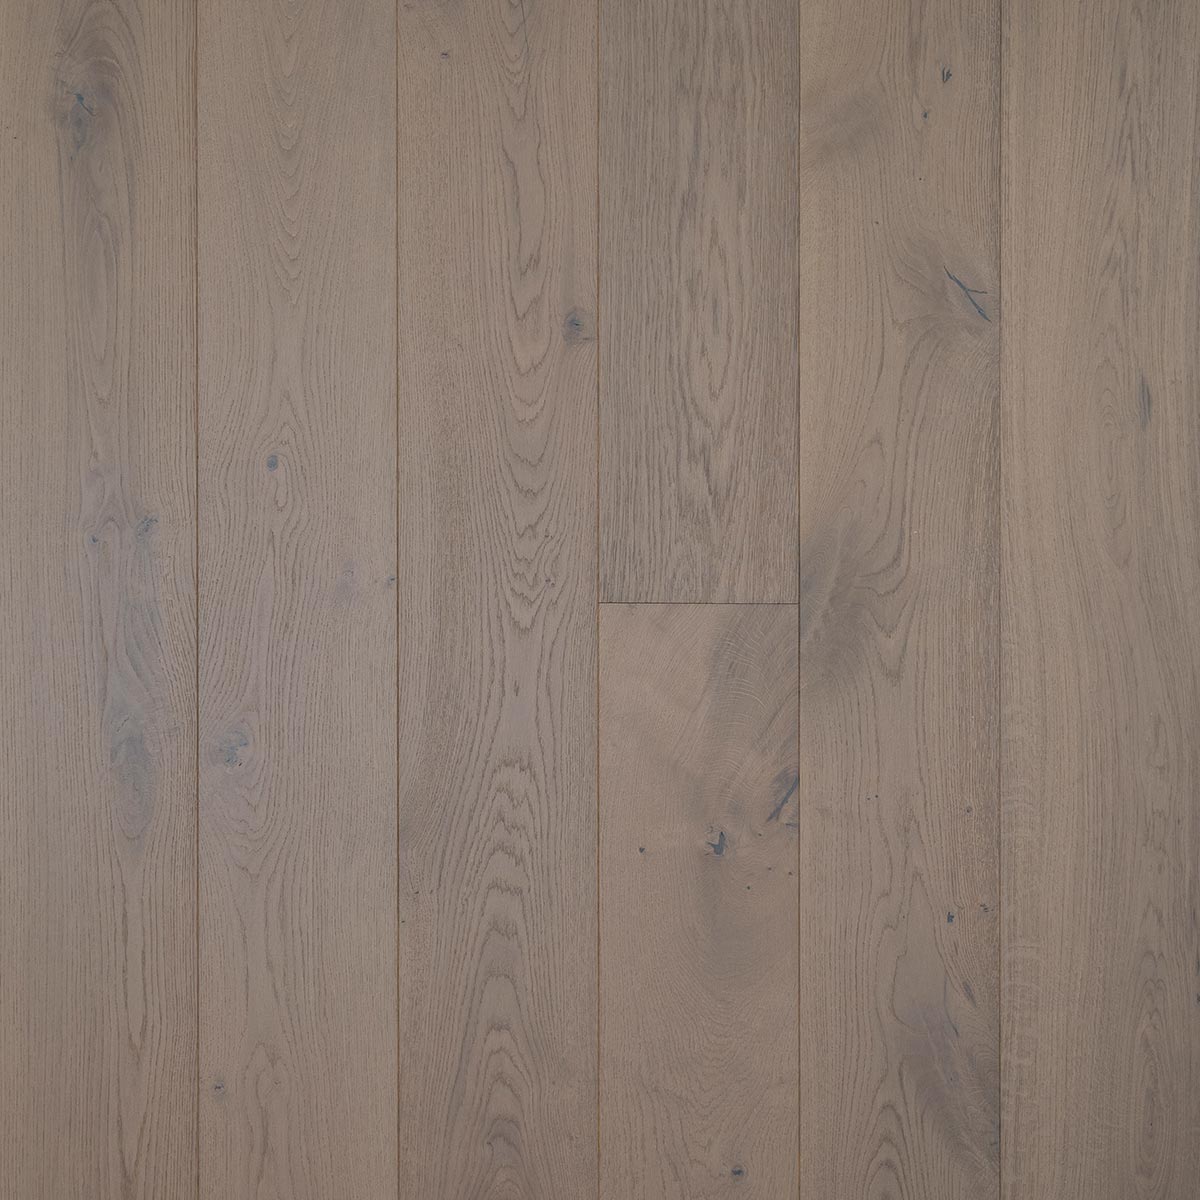 HG103 Rockingham - Brushed & Oiled Rustic Oak Bevelled Wooden Floor